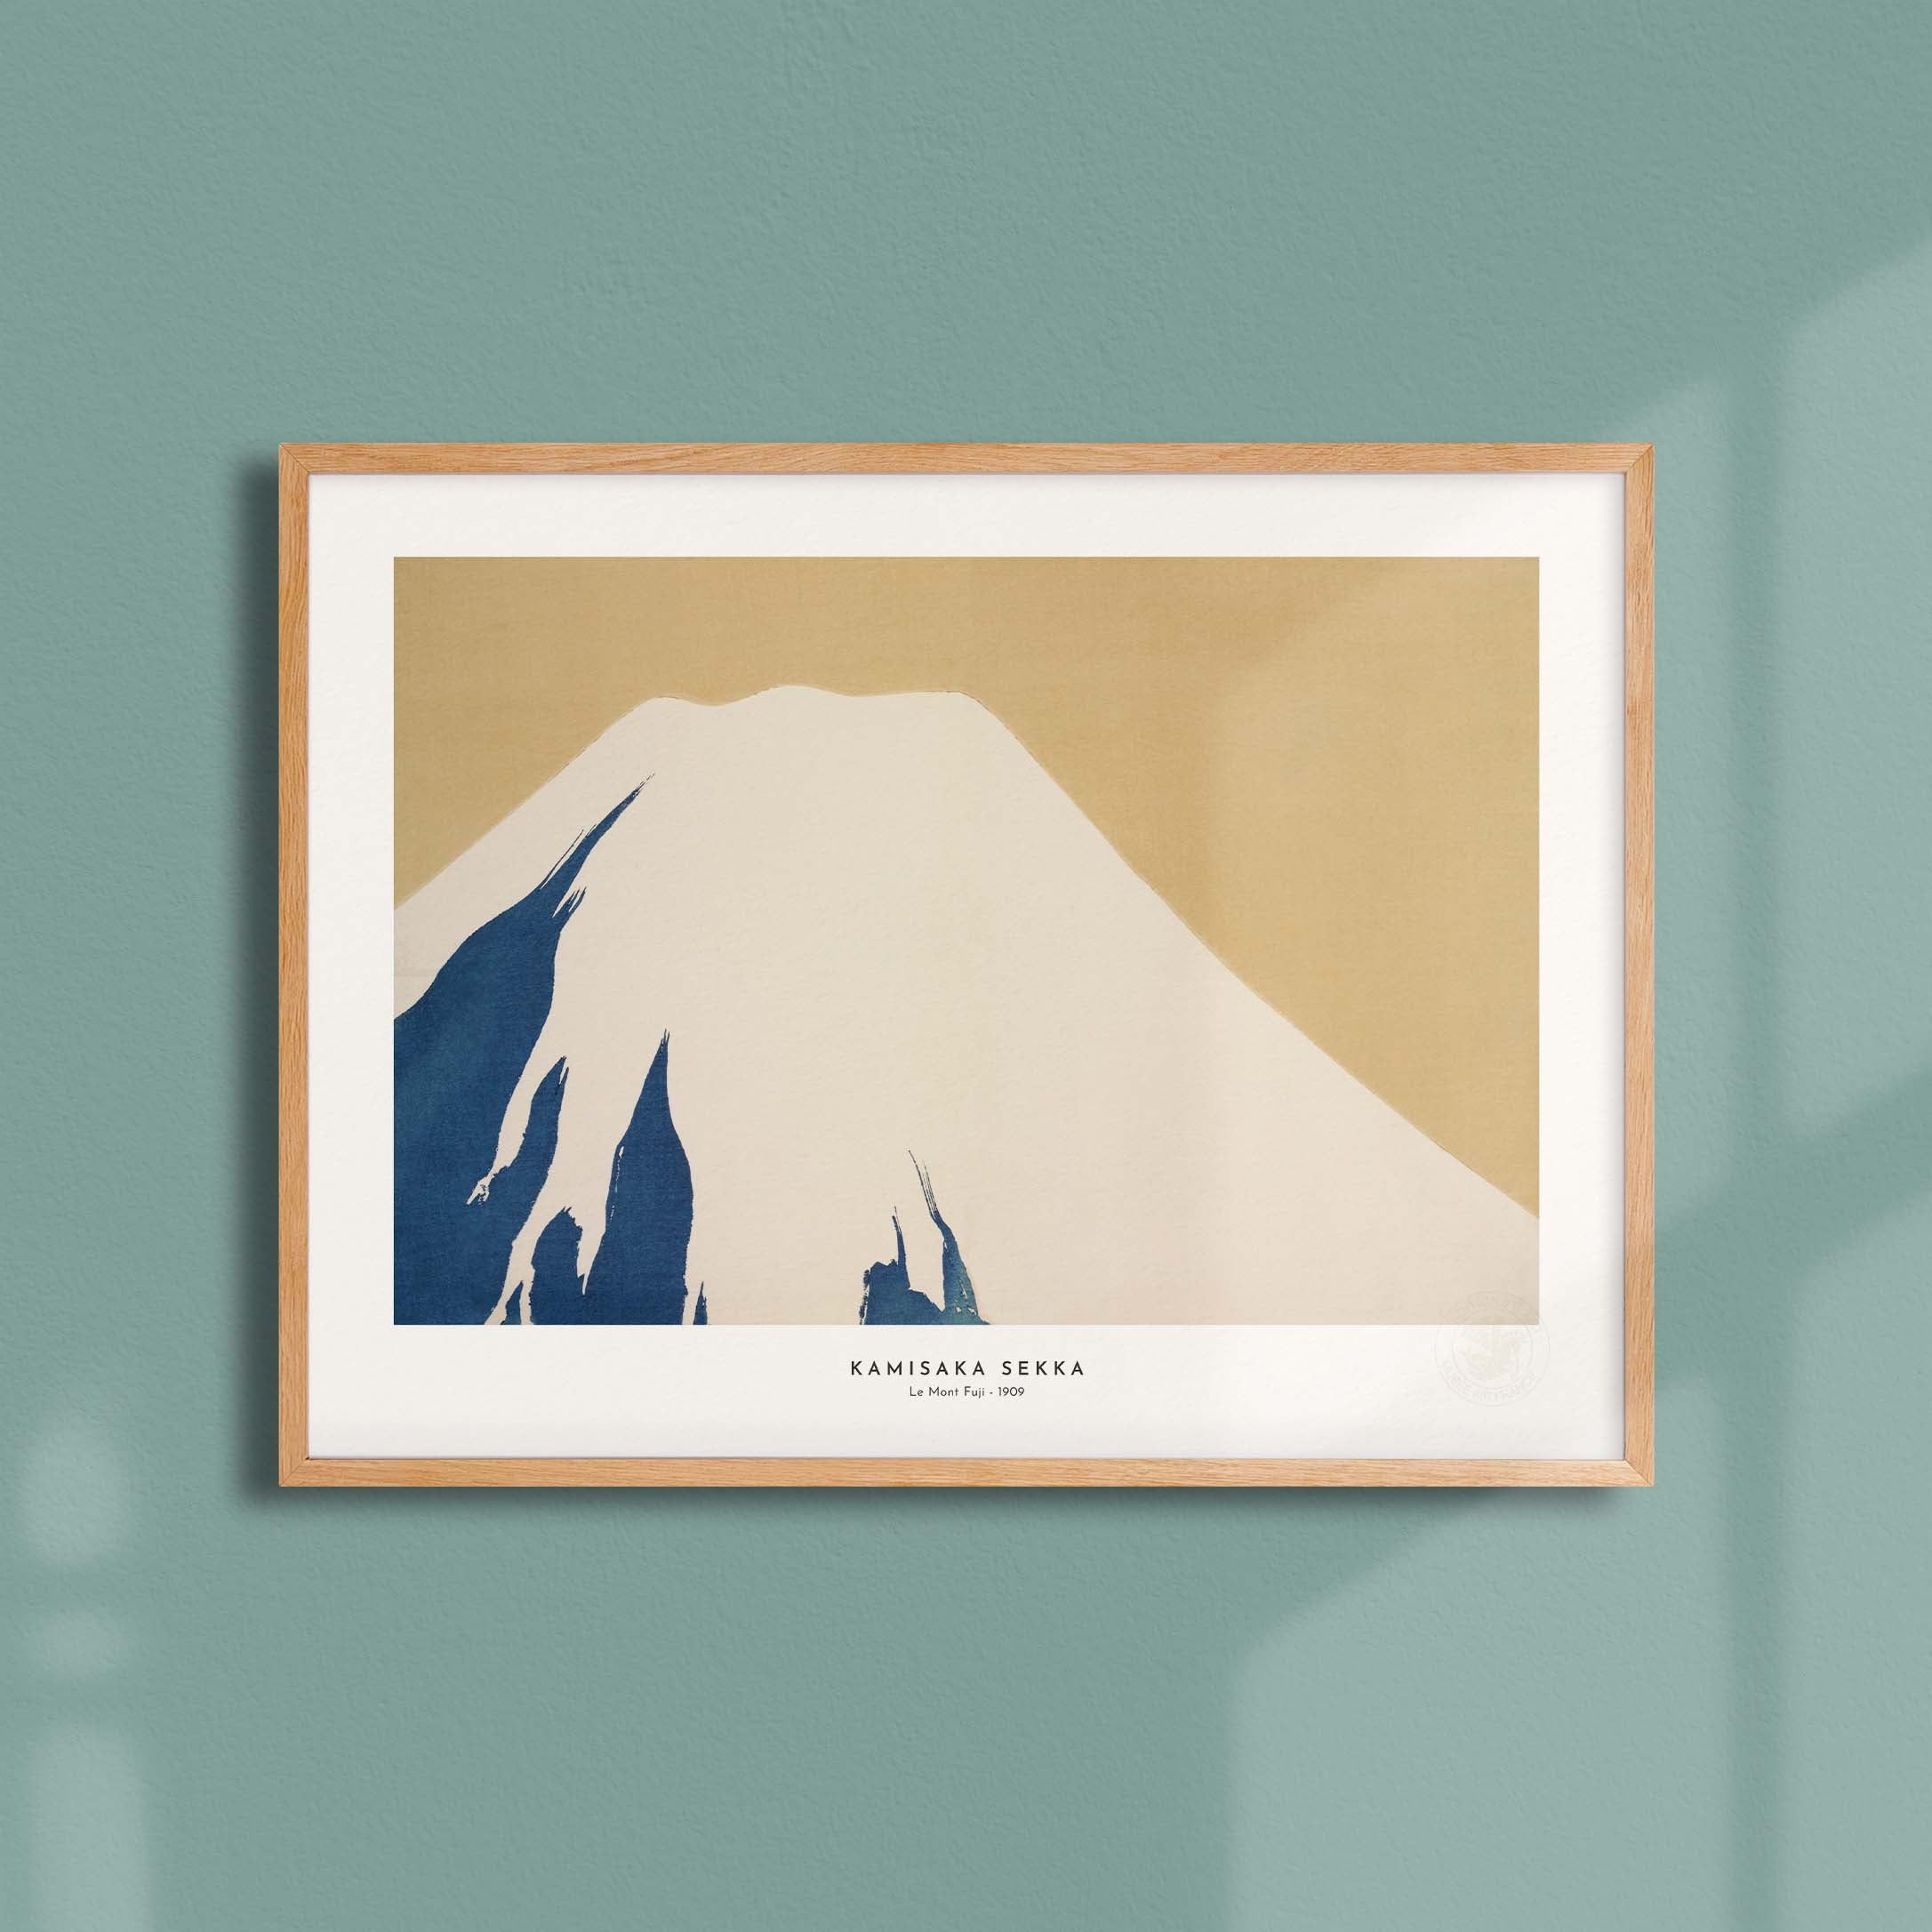 Estampe japonaise - Le Mont Fuji-oneart.fr